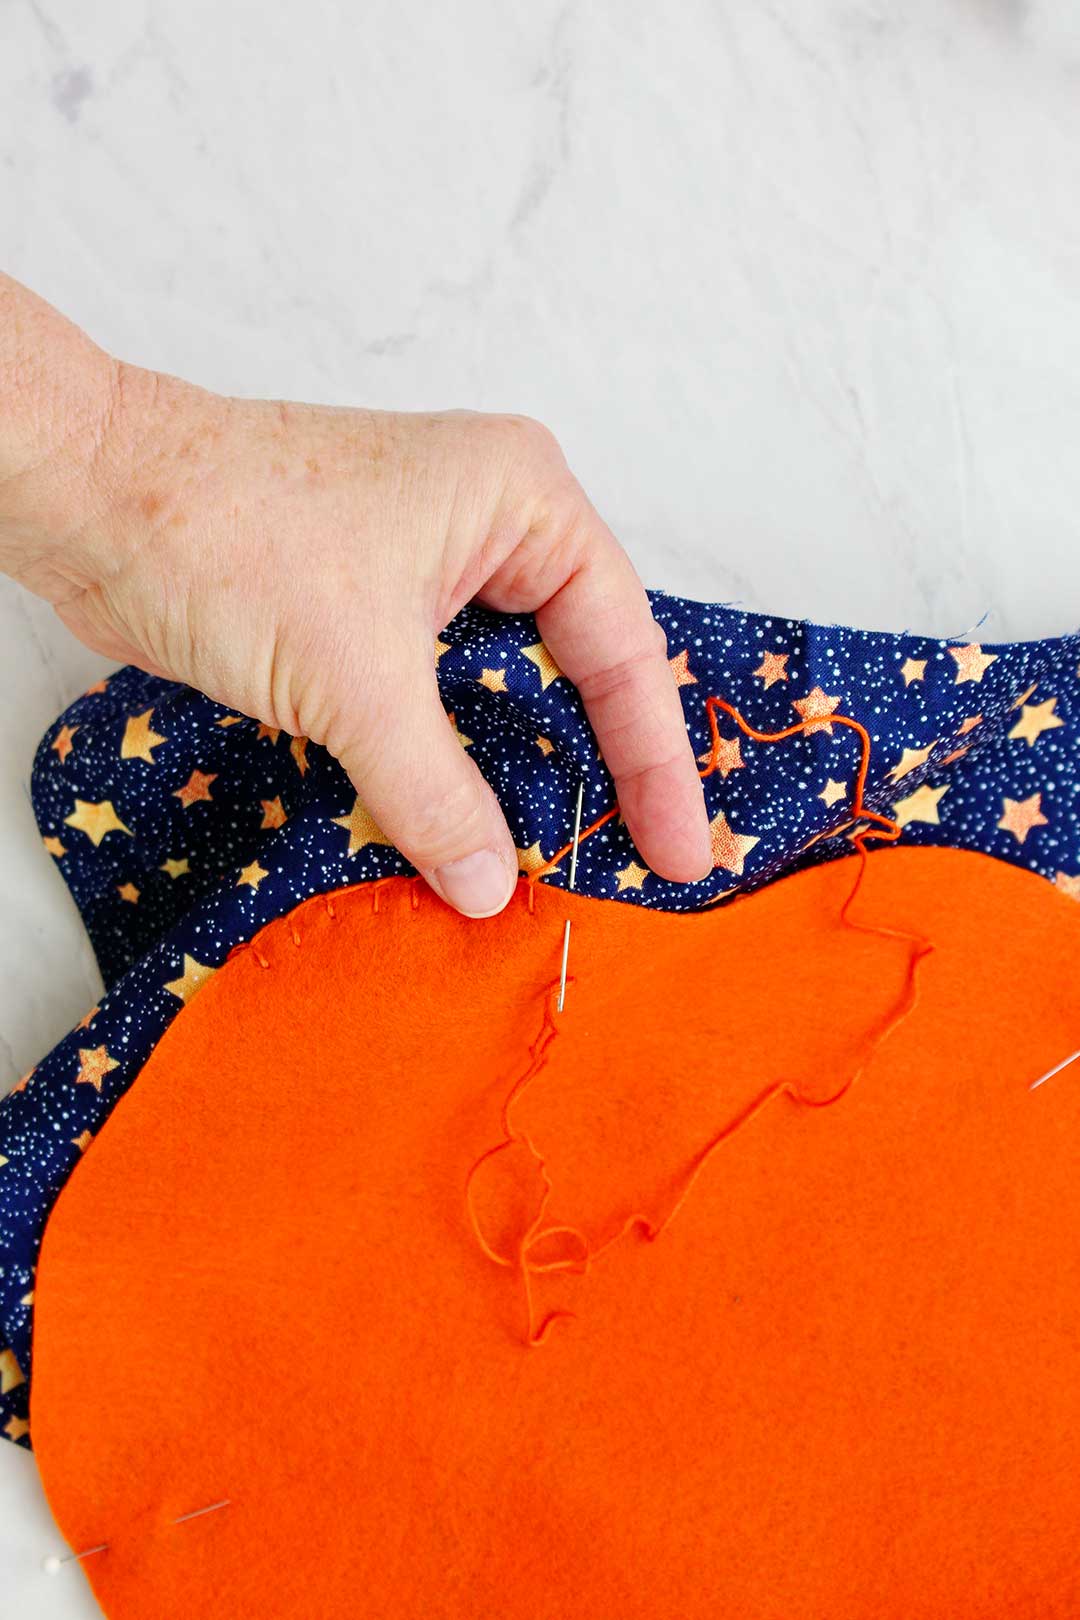 Hand sewing orange thread around felt pumpkin decoration.